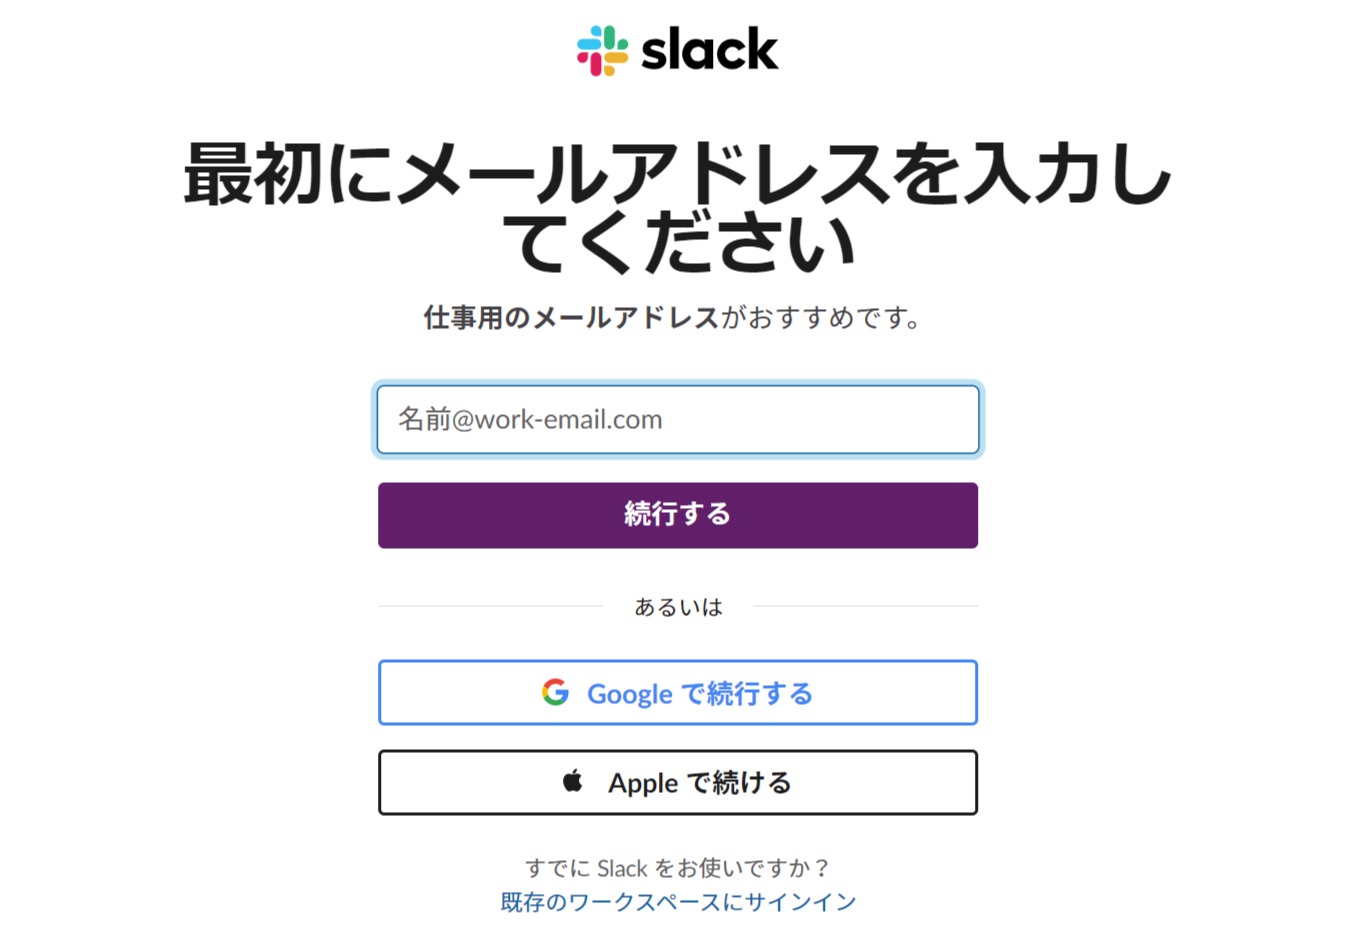 Slackのメールアドレス入力画面